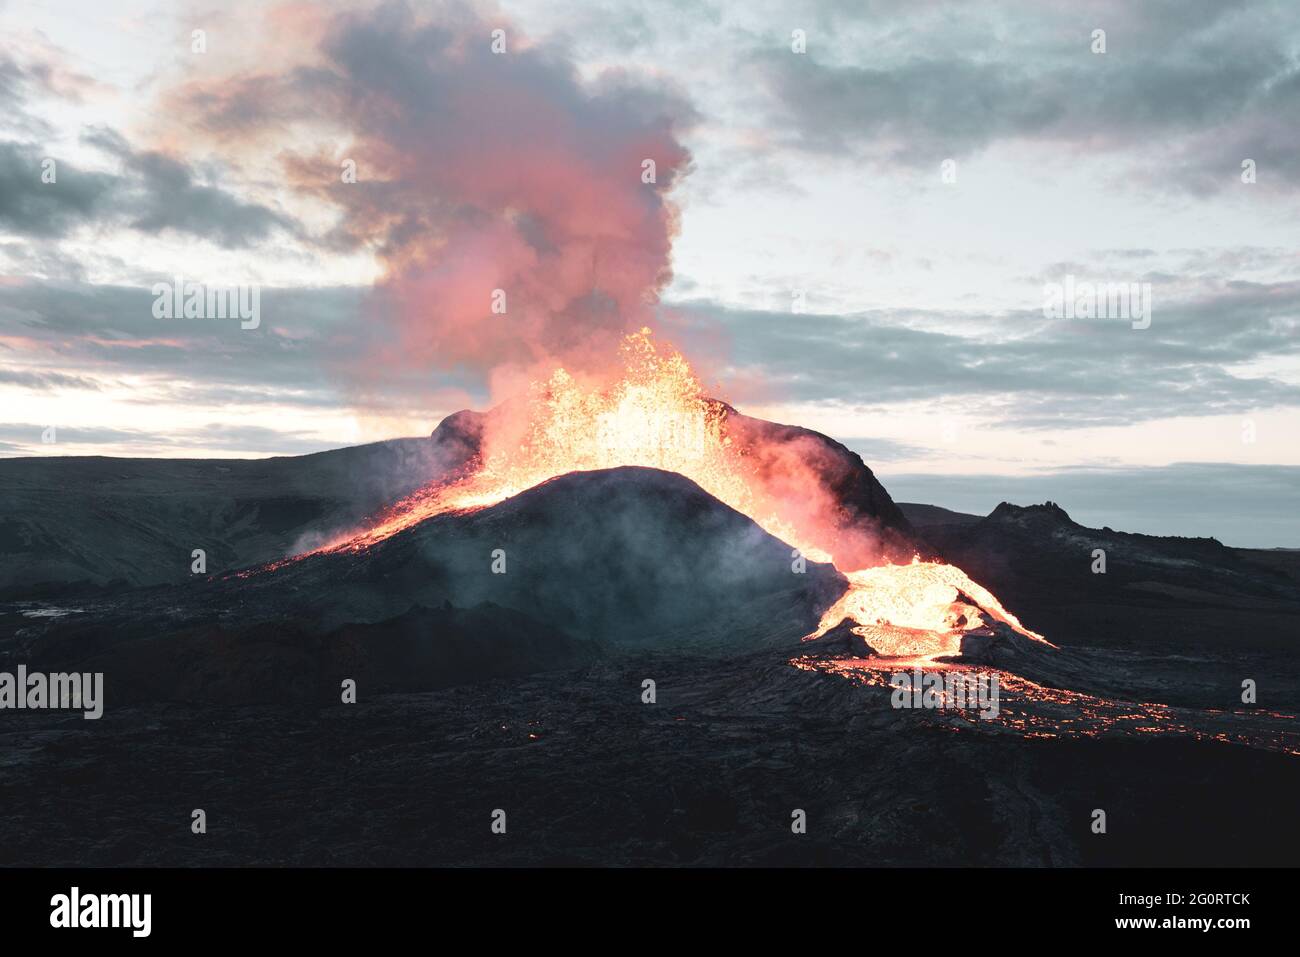 MAI 2021: Das ausgedehntere vulkanische System Fagradalsfjall umfasst ein Gebiet mit eruptiven Spalten (Fissurenschwarm), Kegeln und Lavafeldern im südlichen Teil der Halbinsel Reykjanes. Seit Ende Februar 2021 begann in der Nähe des Fagradalsfjall eine starke seismische Krise, die als Eindringen von Magma in geringer Tiefe interpretiert wird. Dies führte zum ersten historischen Ausbruch des Vulkans am 19. März 2021. Stockfoto